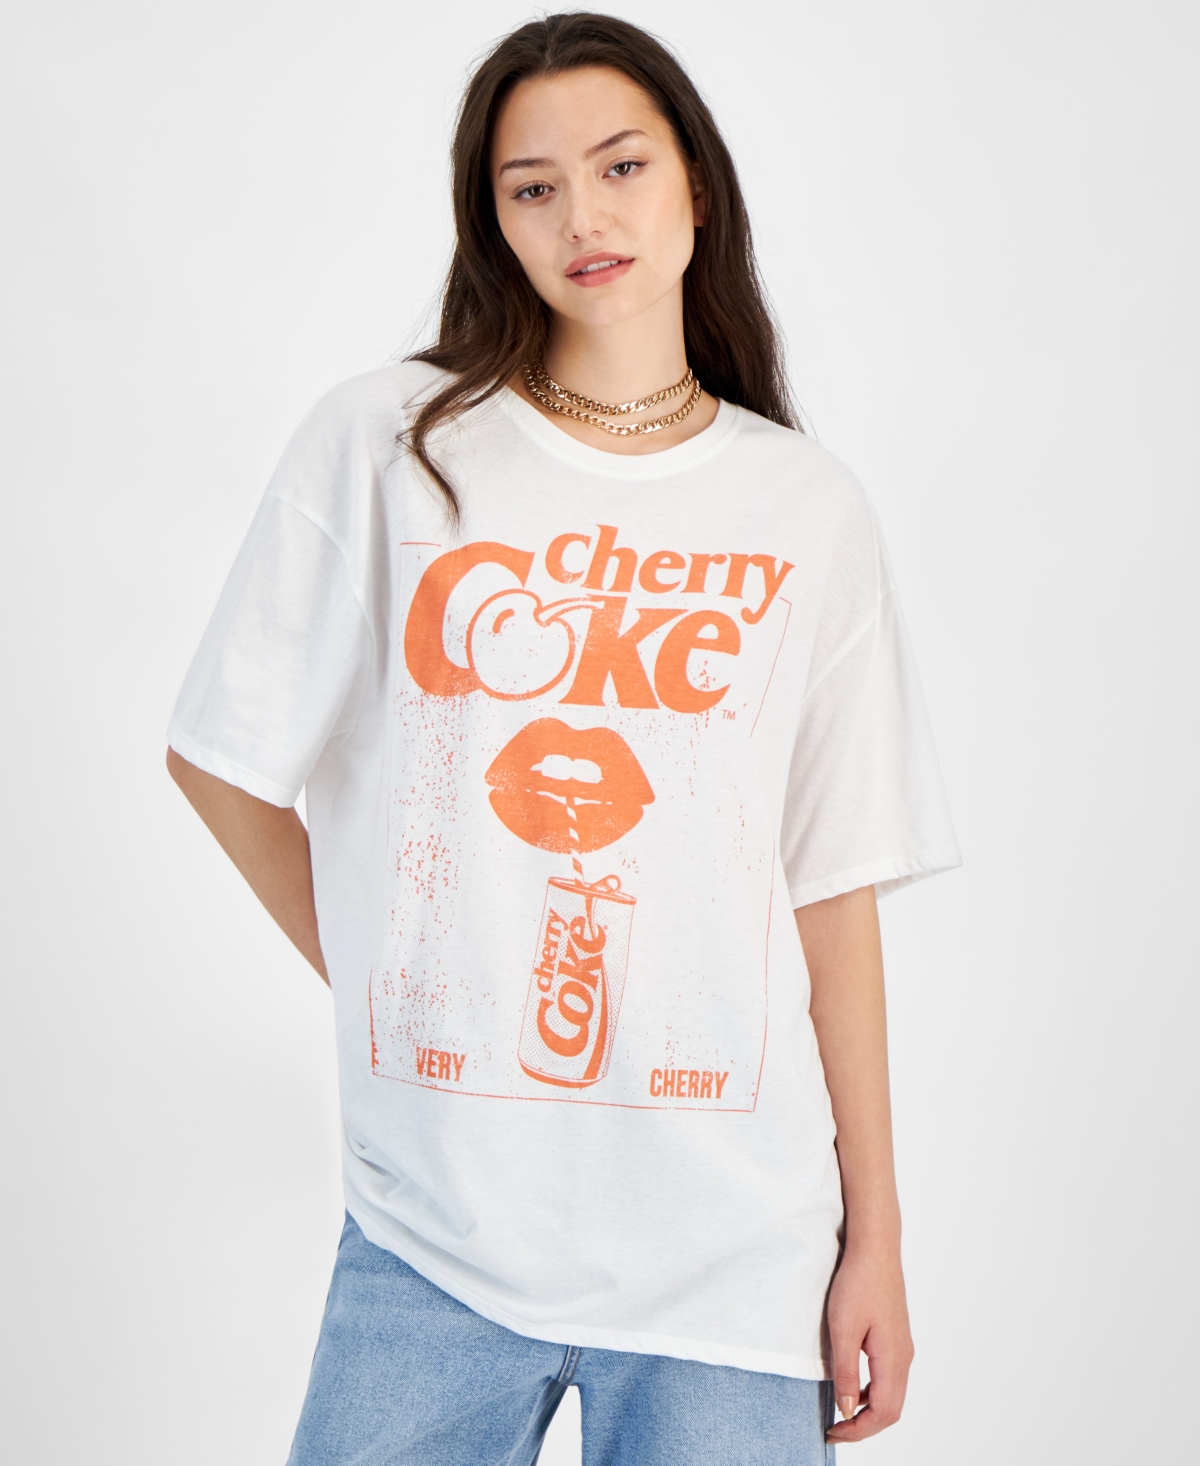 Juniors' Cherry Coke Graphic T-Shirt - White